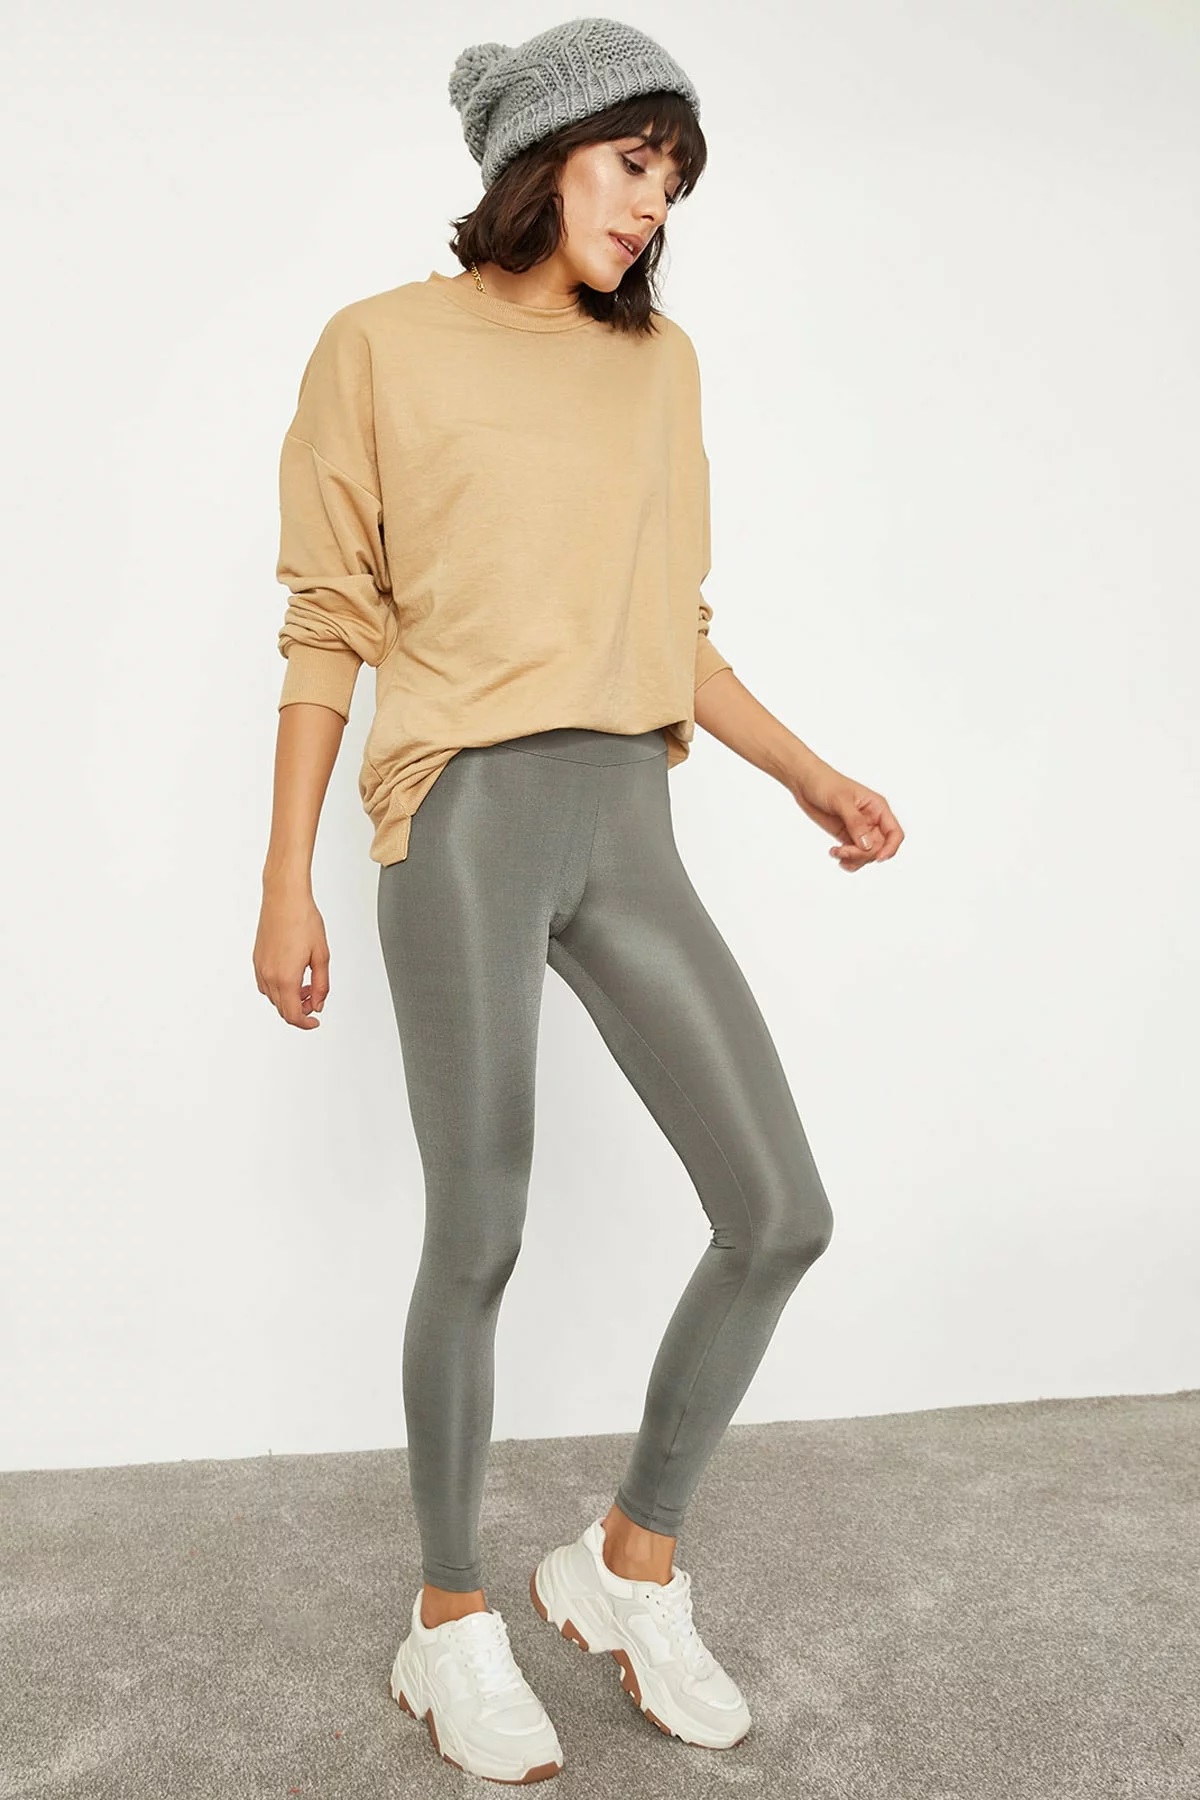 Women's Light Gray Shiny Leggings - BEREN